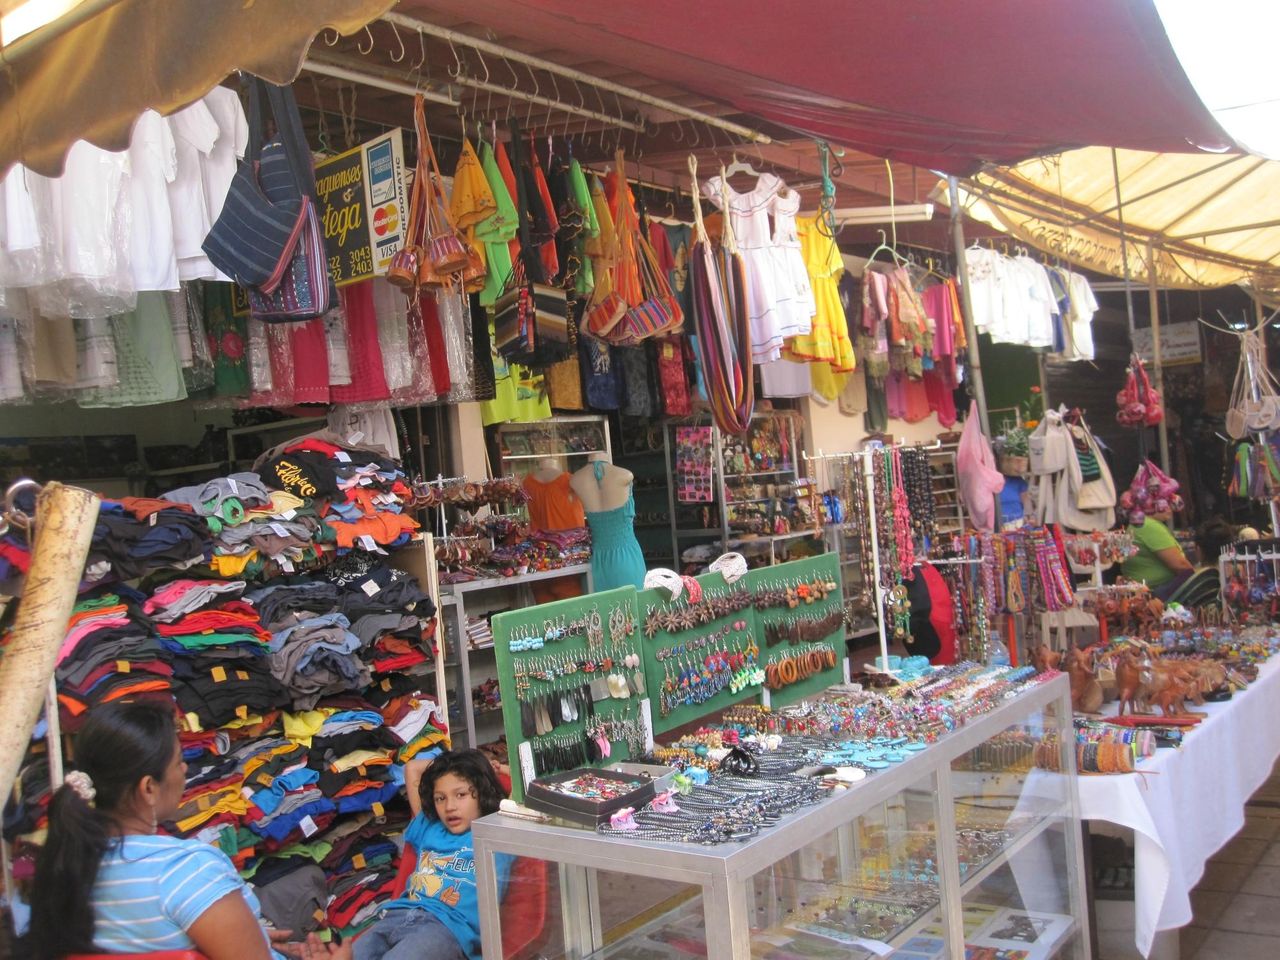 Ontdek de levendige kleuren en cultuur van de Artisan Market van Masaya.